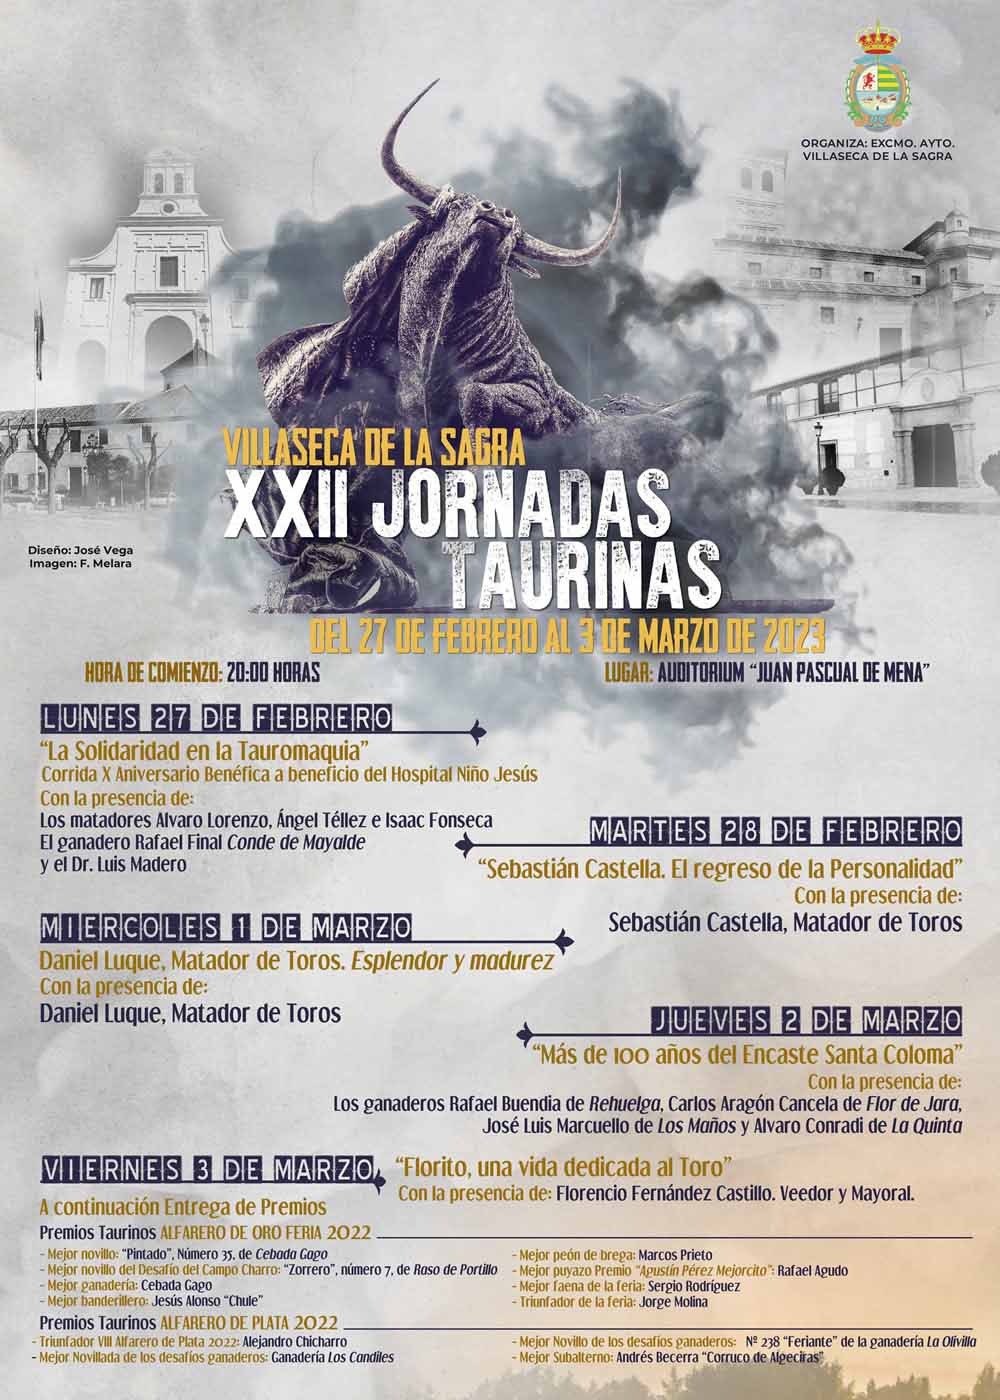 Castella y Luque confirmados en las “XXII Jornadas Taurinas 2023” de Villaseca de la Sagra, que se celebrarán del lunes 27 de Febrero al 3 de Marzo de 2023 en el Auditorio “Juan Pascual de Mena” a partir de las 20:00 horas.